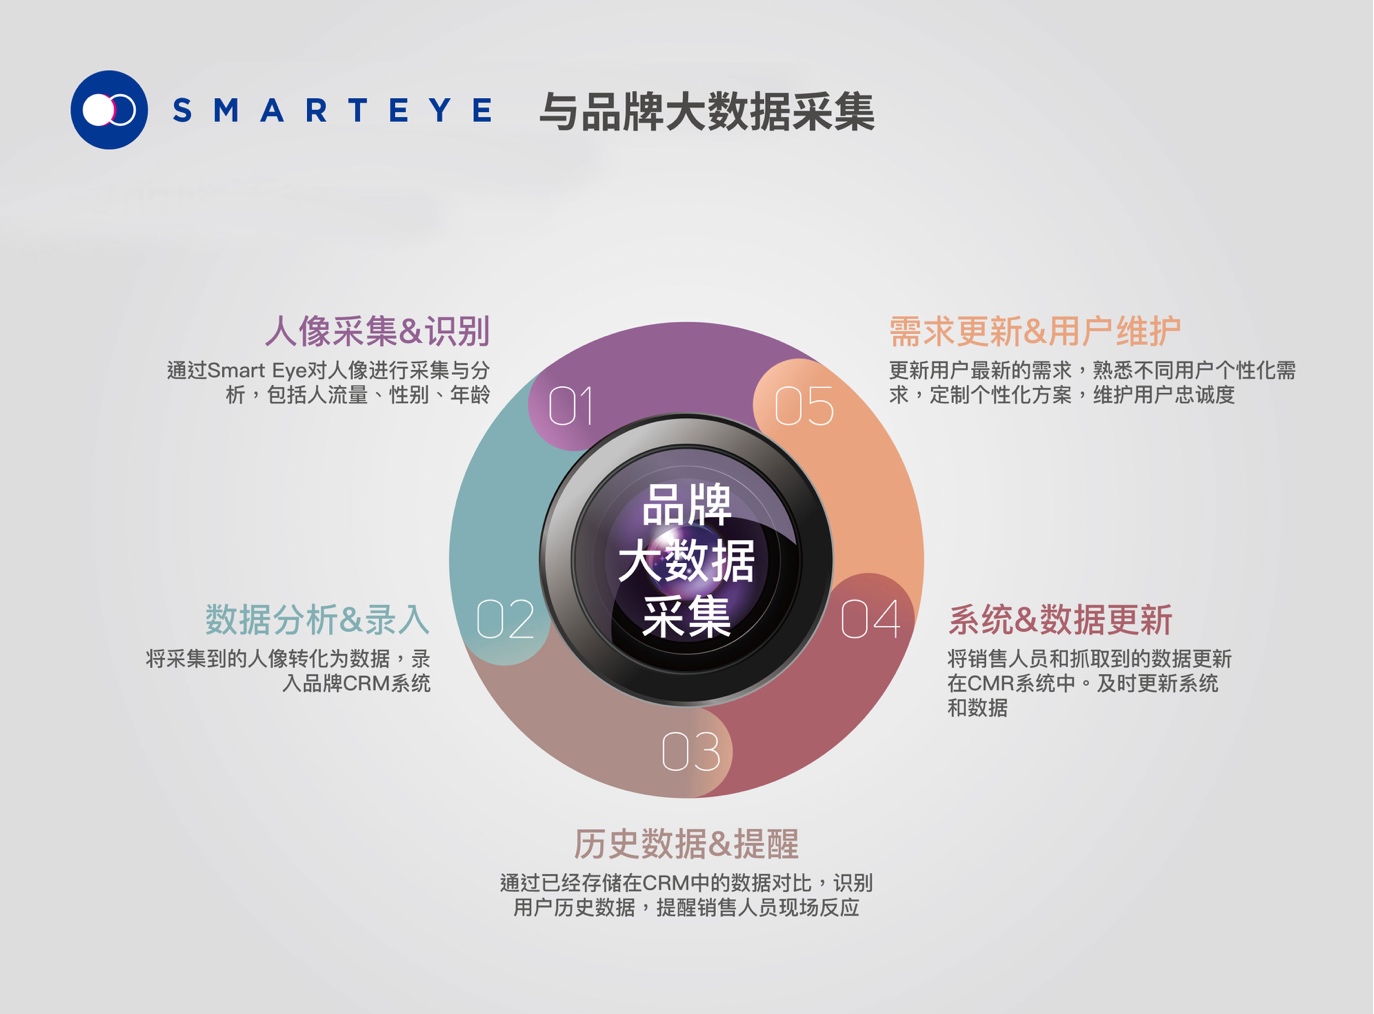 SmartEye智能影像识别营销系统